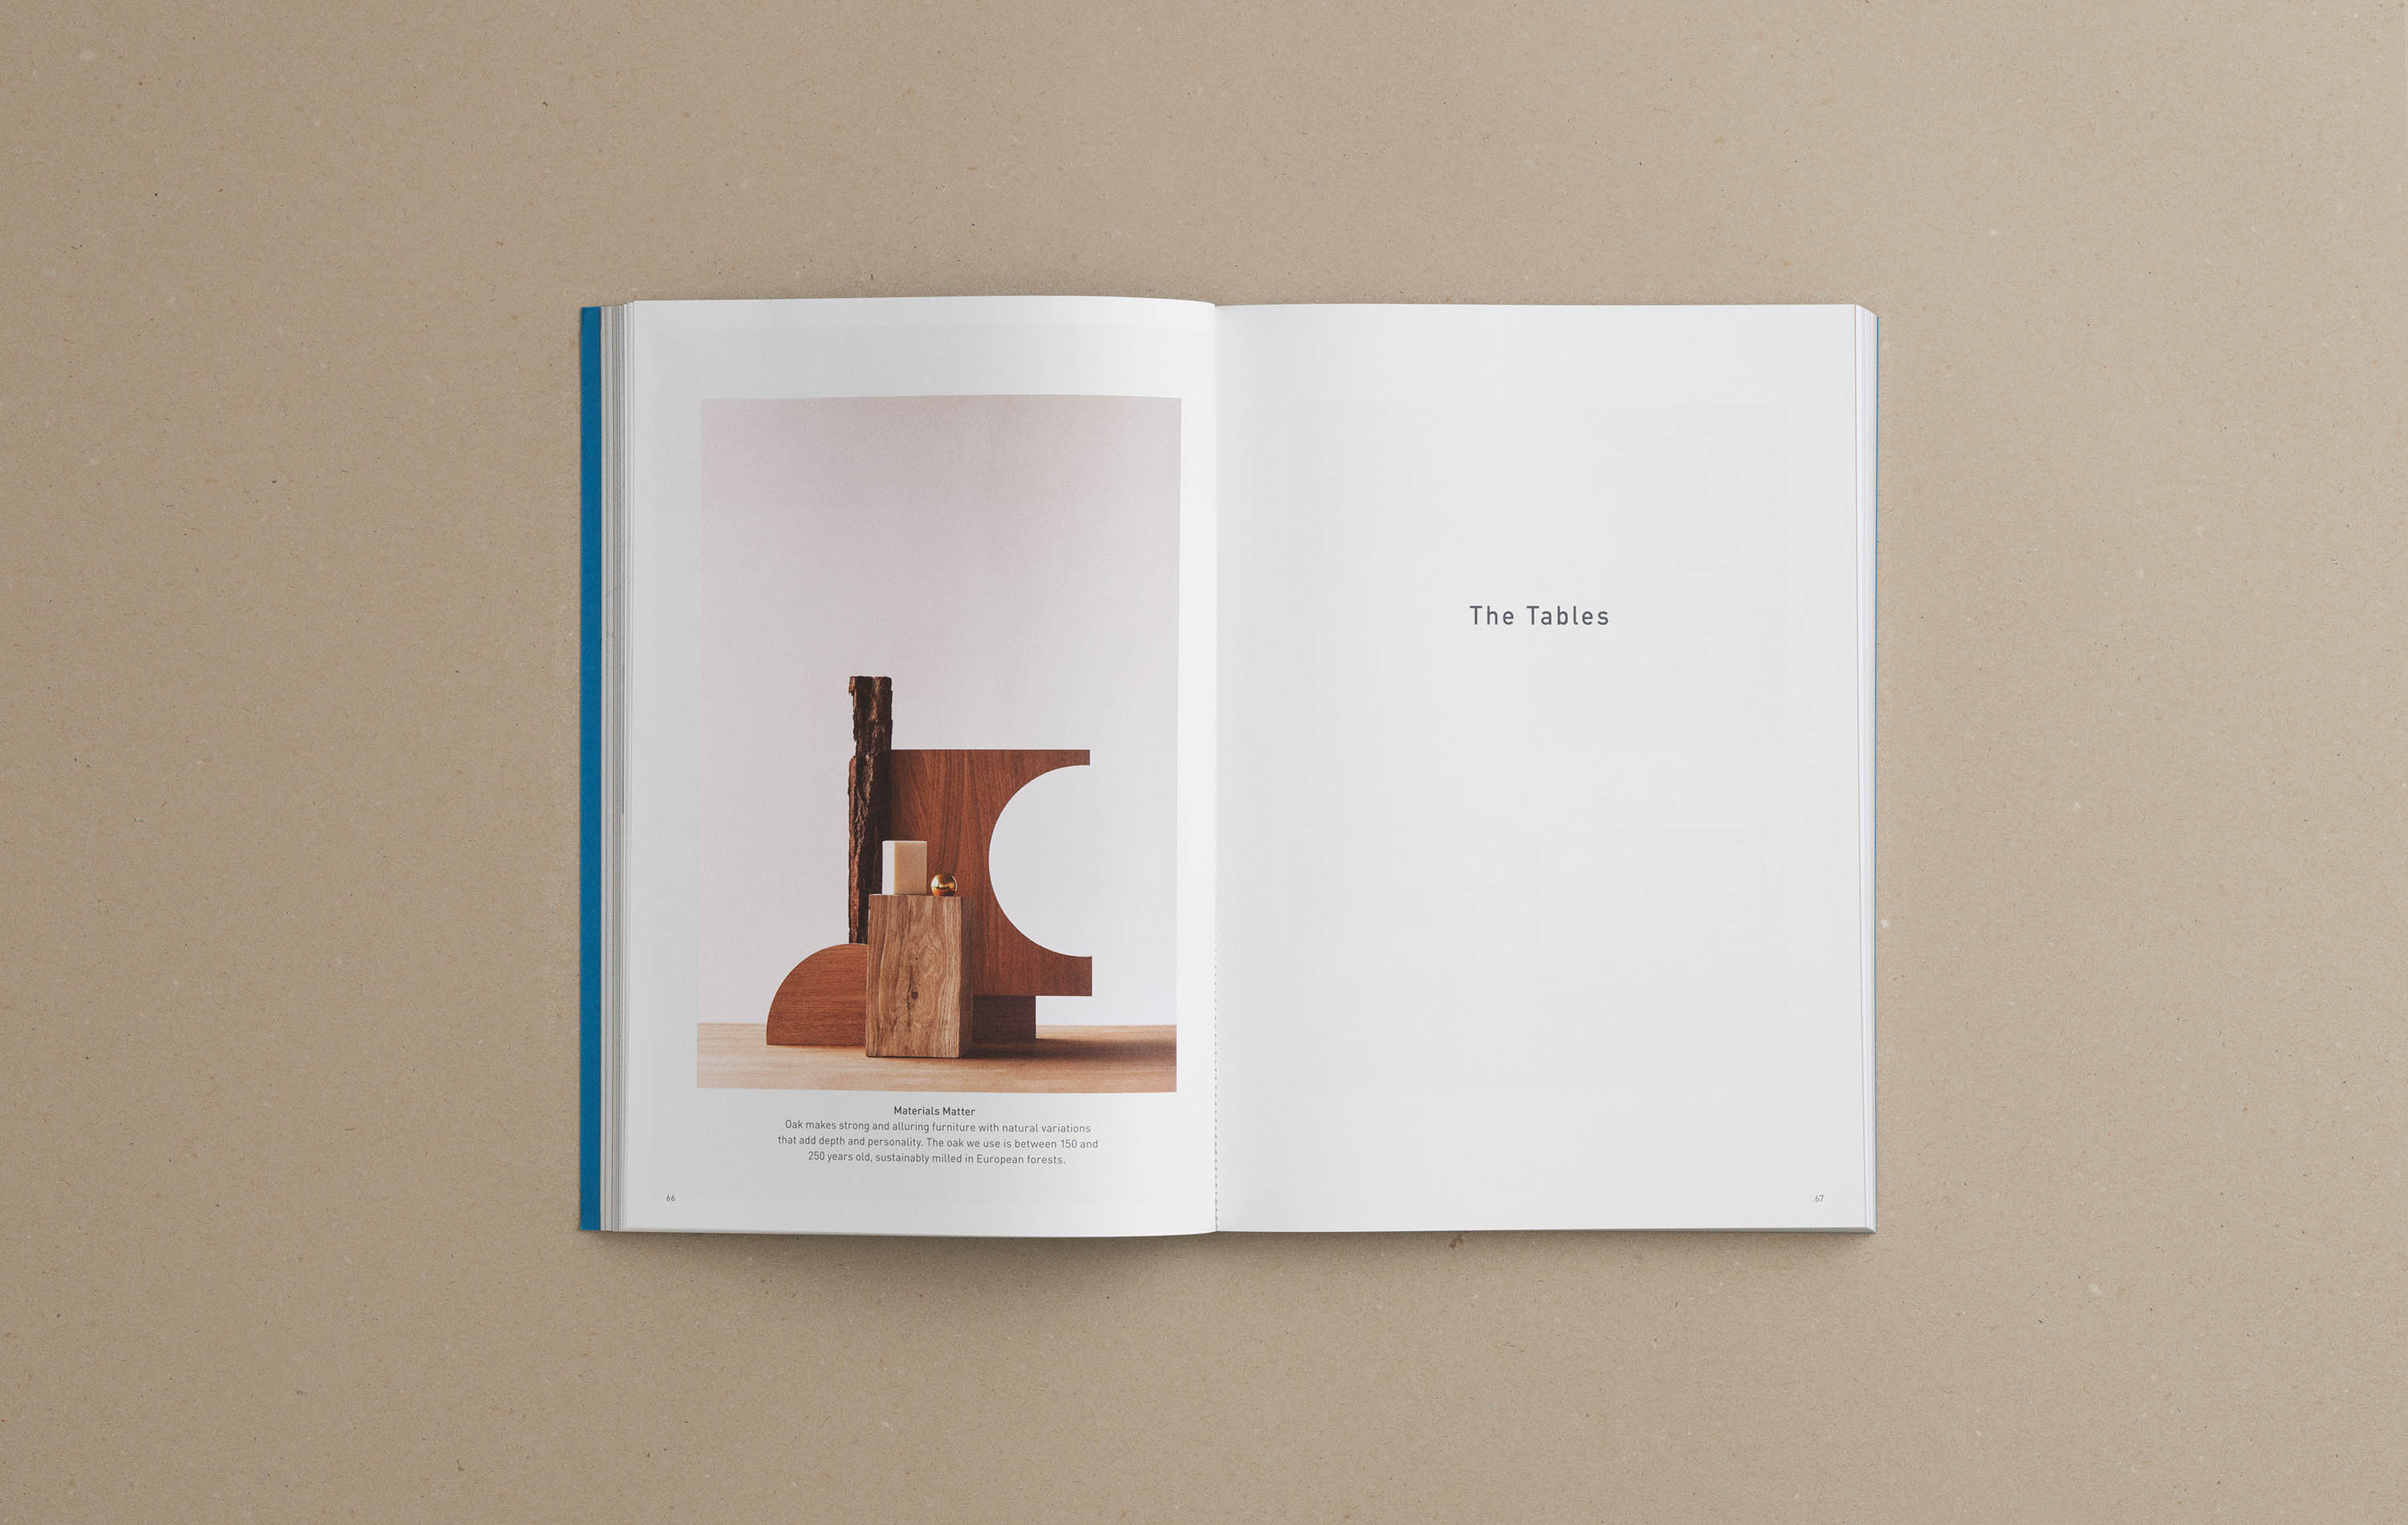 Catalogue from Carl Hansen & son